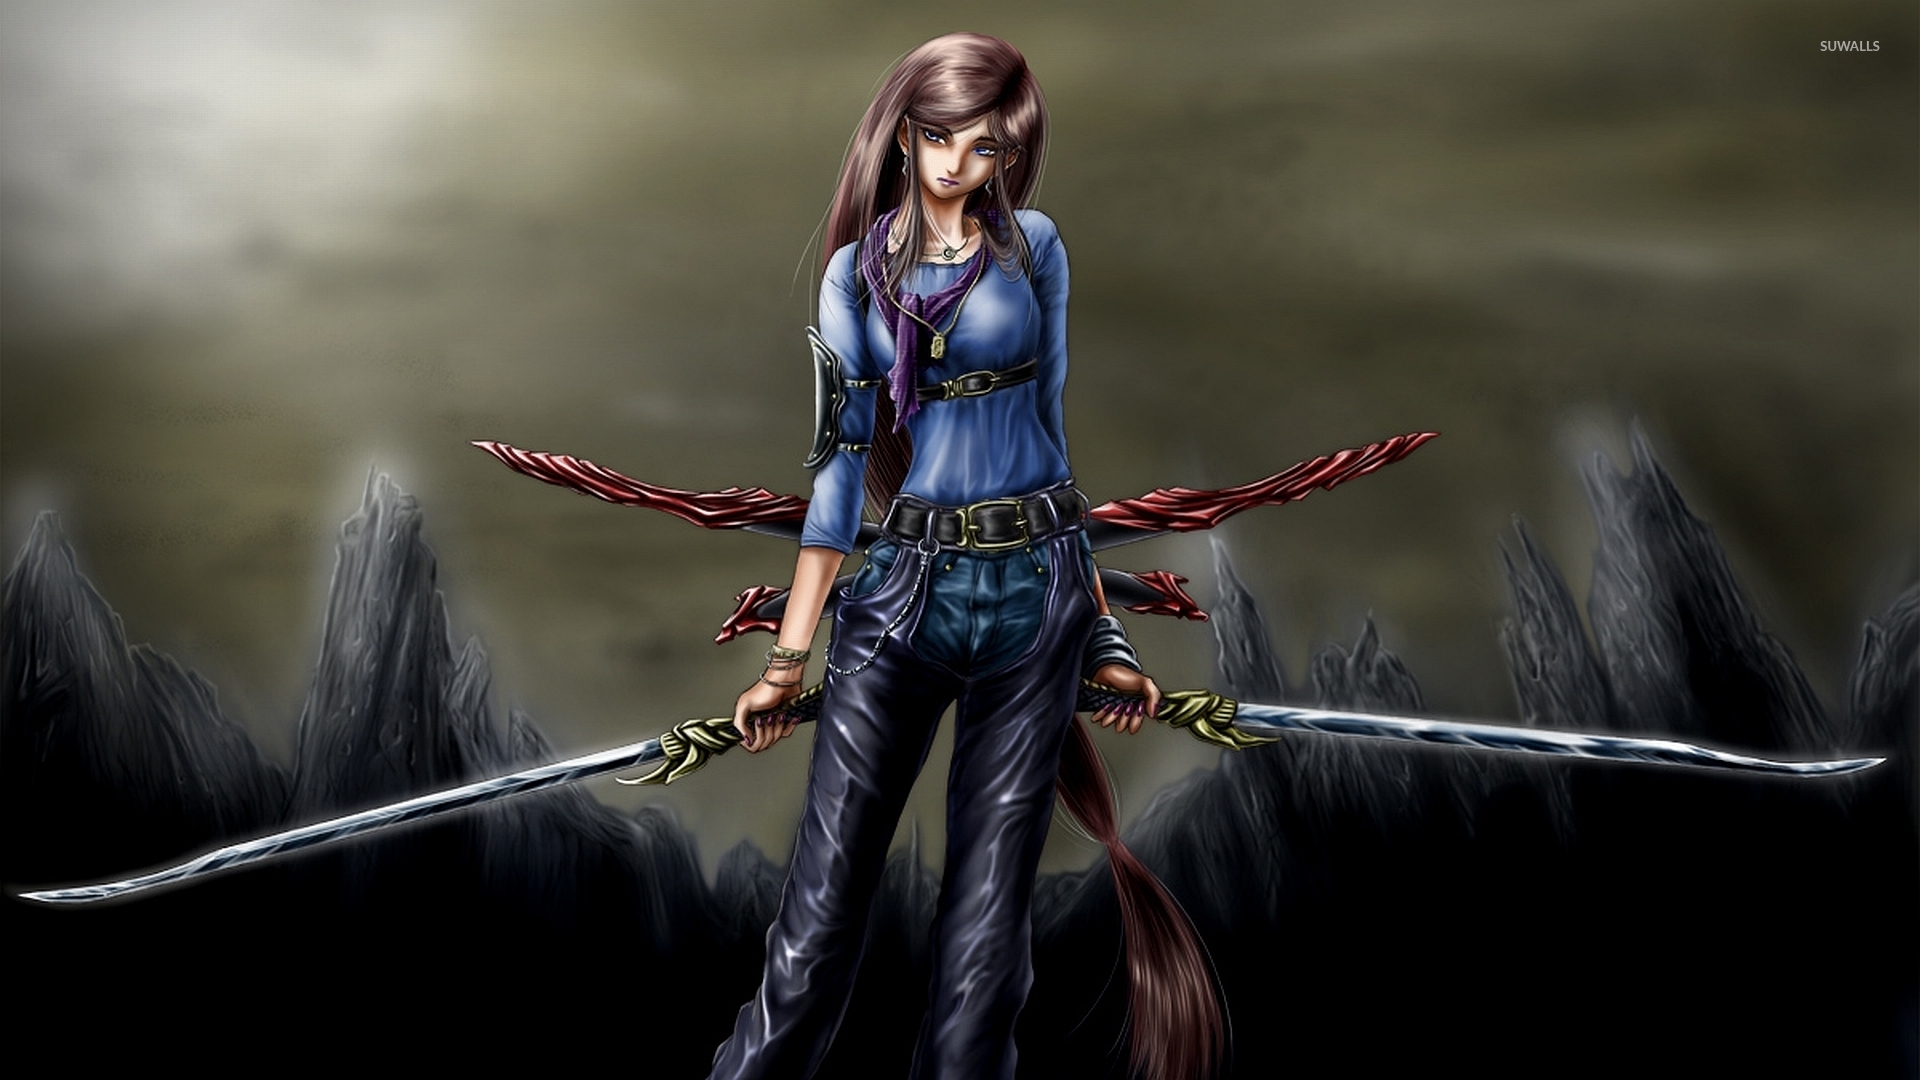 fondo de pantalla de mujer guerrera,juego de acción y aventura,cg artwork,personaje de ficción,juego de pc,juegos